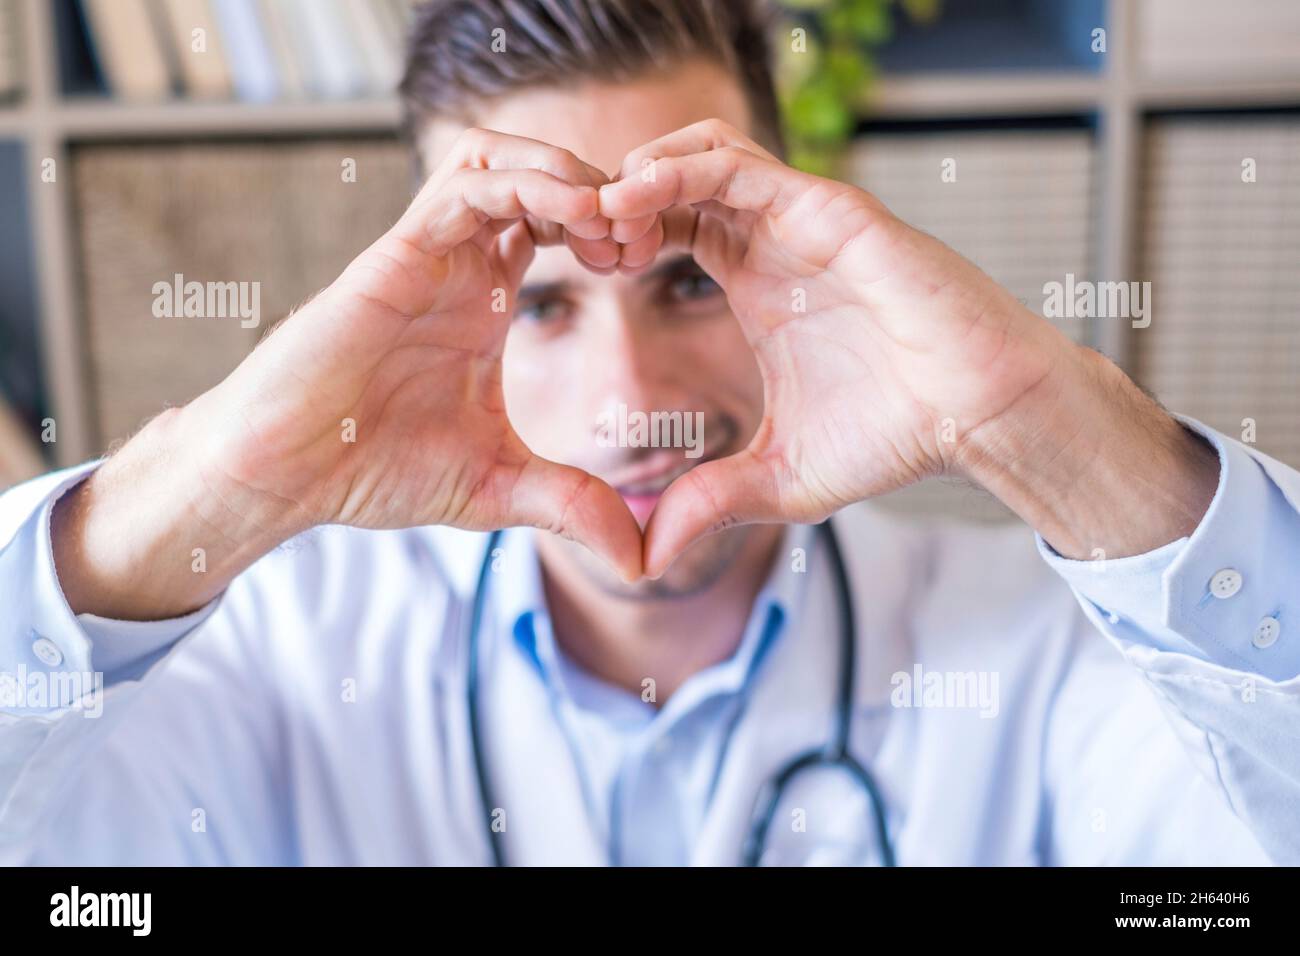 Nahaufnahme Porträt von lächelnden jungen kaukasischen männlichen Krankenschwester oder hausarzt in weißer medizinischer Uniform zeigen Herz Liebe Hand Geste. Glückliche junge Mann Arzt zeigen Unterstützung und Pflege für Patienten oder Client im Krankenhaus. Stockfoto